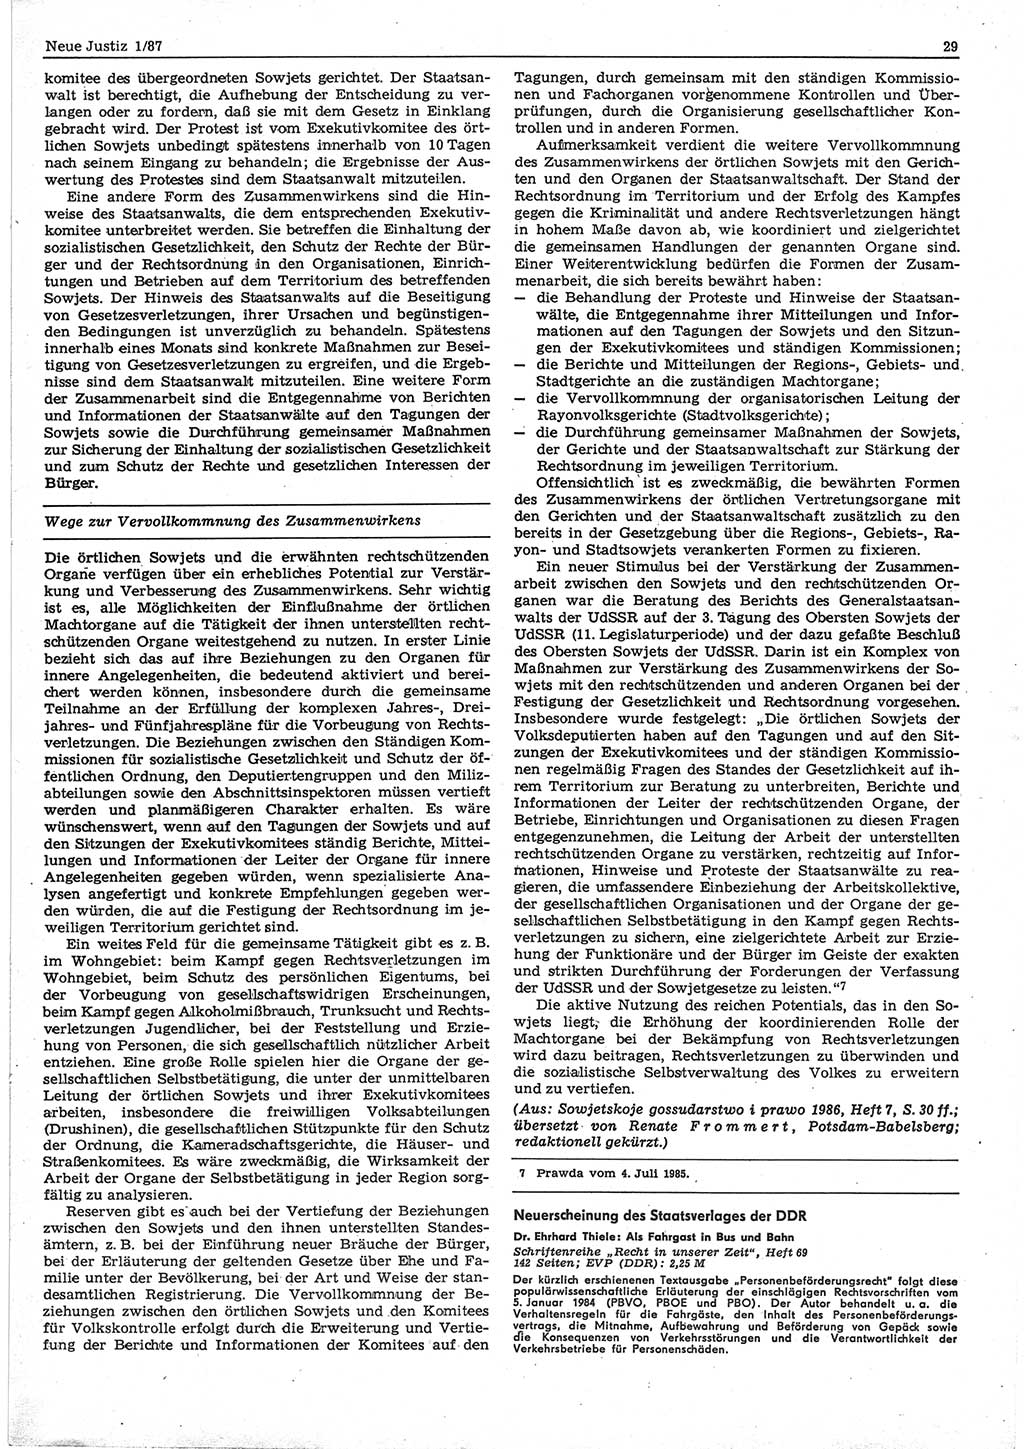 Neue Justiz (NJ), Zeitschrift für sozialistisches Recht und Gesetzlichkeit [Deutsche Demokratische Republik (DDR)], 41. Jahrgang 1987, Seite 29 (NJ DDR 1987, S. 29)